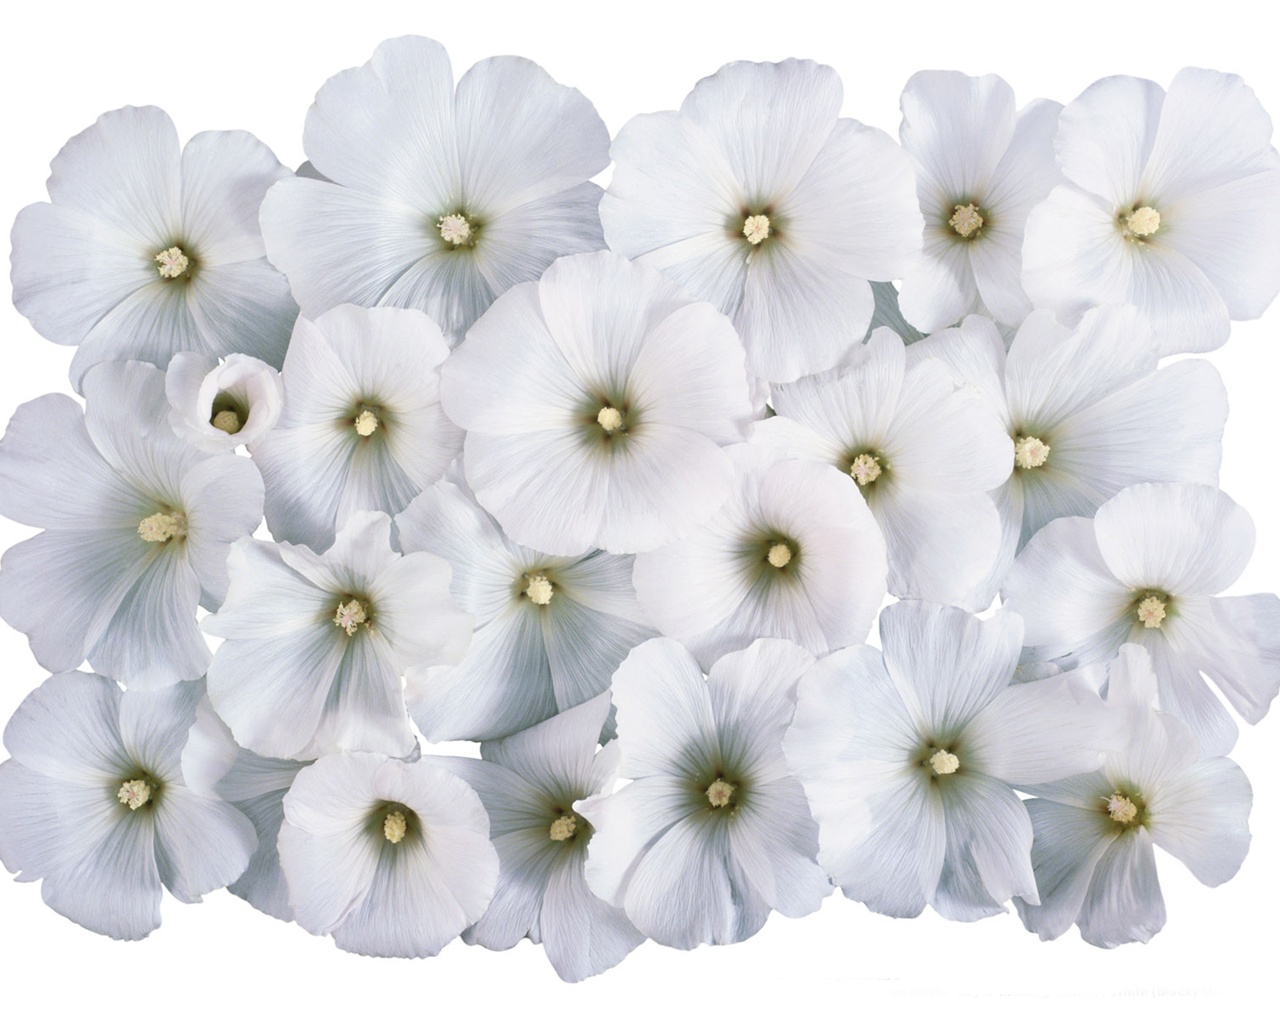 눈같이 흰 꽃 벽지 #4 - 1280x1024